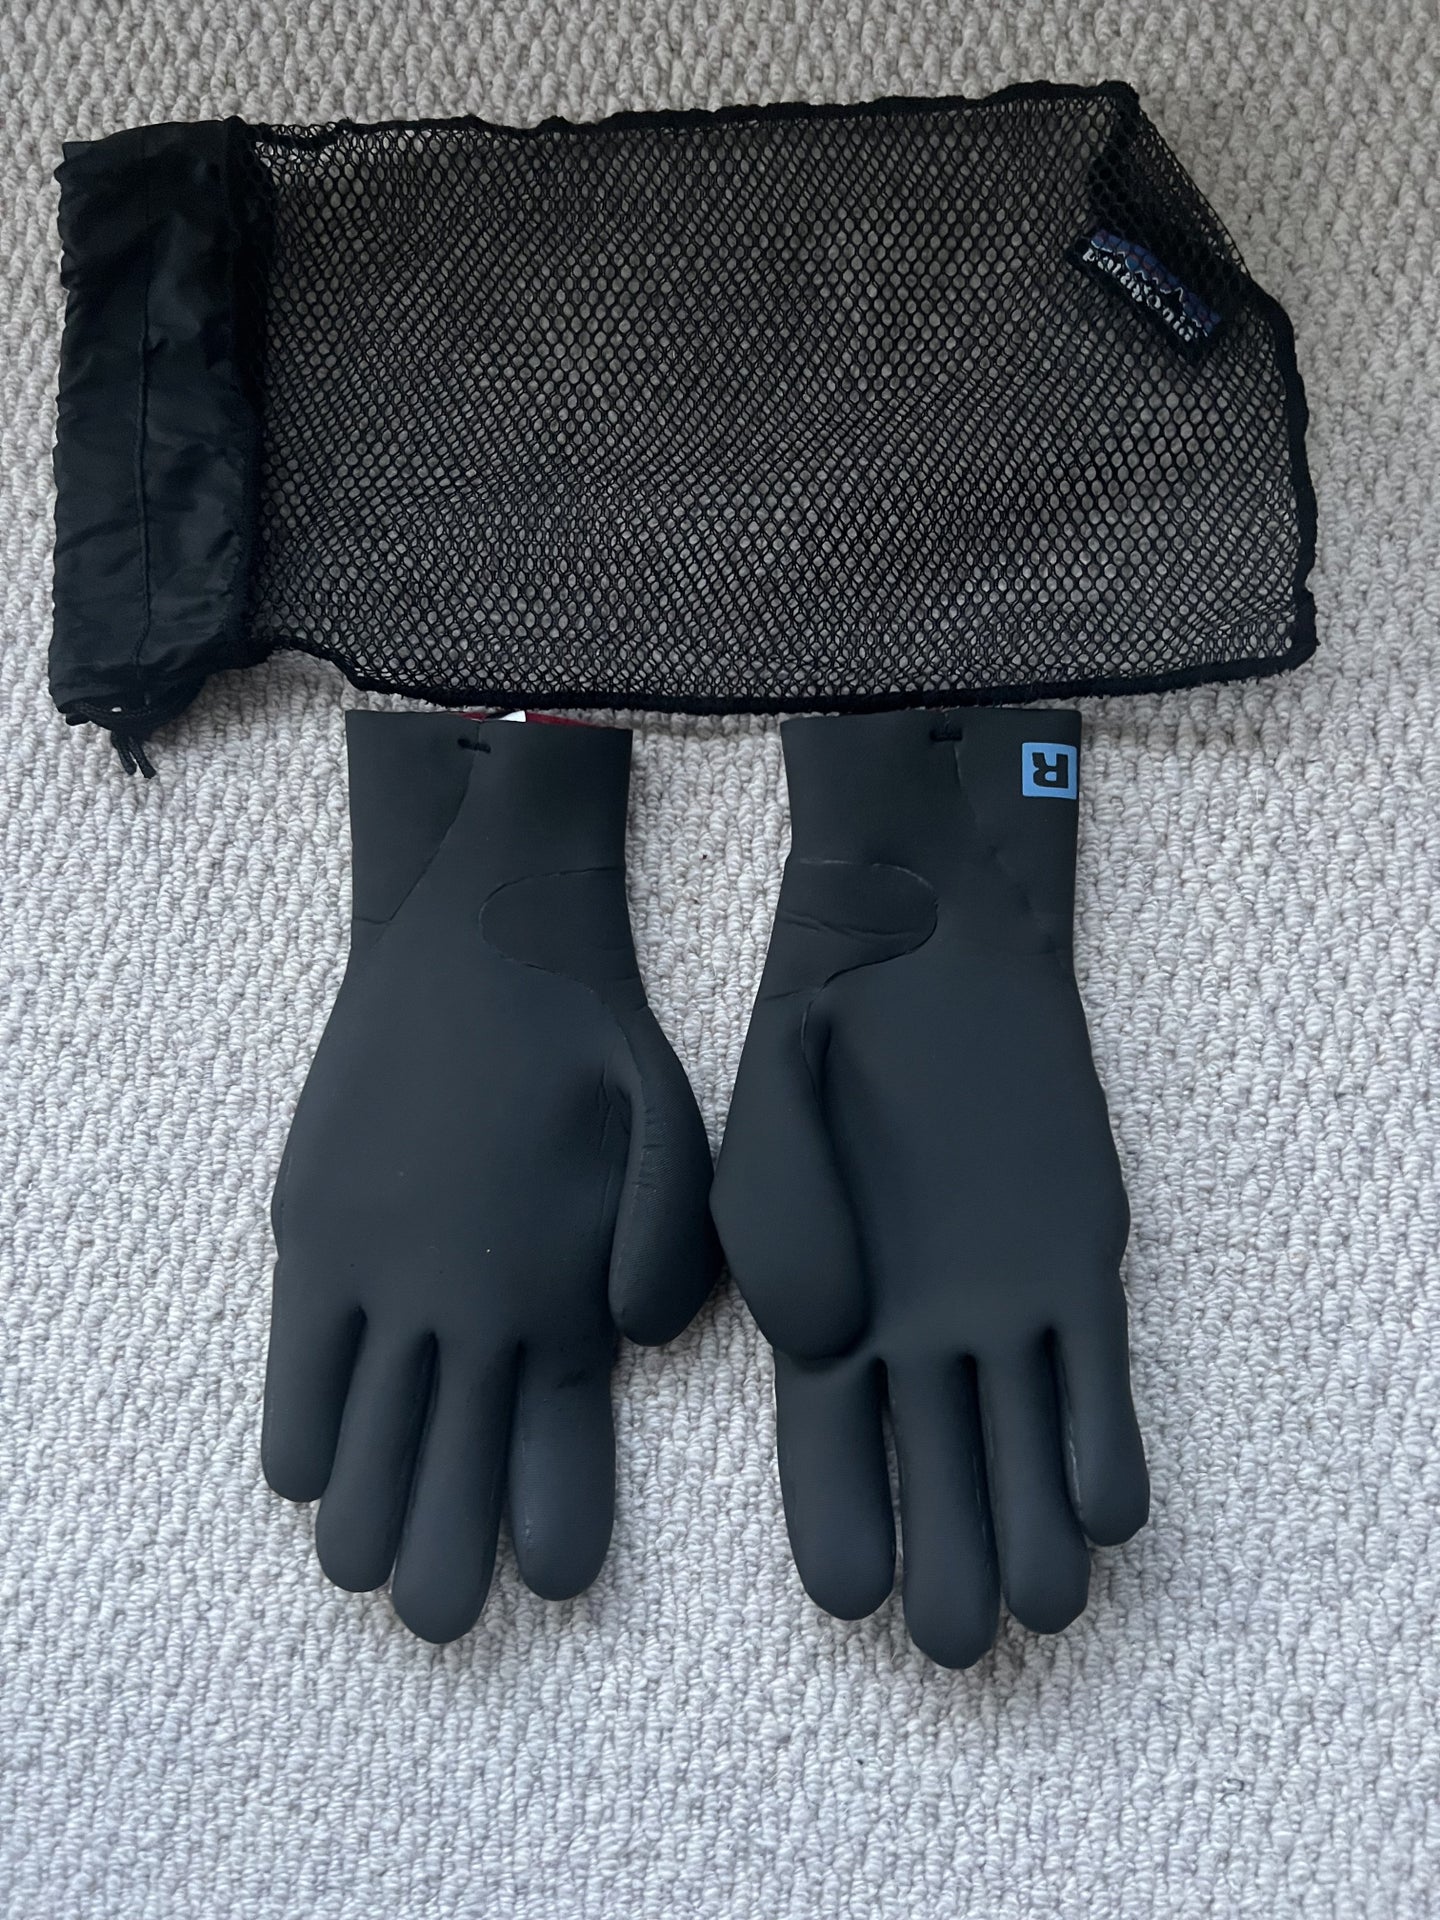 Patagonia neoprene full finger winter fishing gloves Men Medium